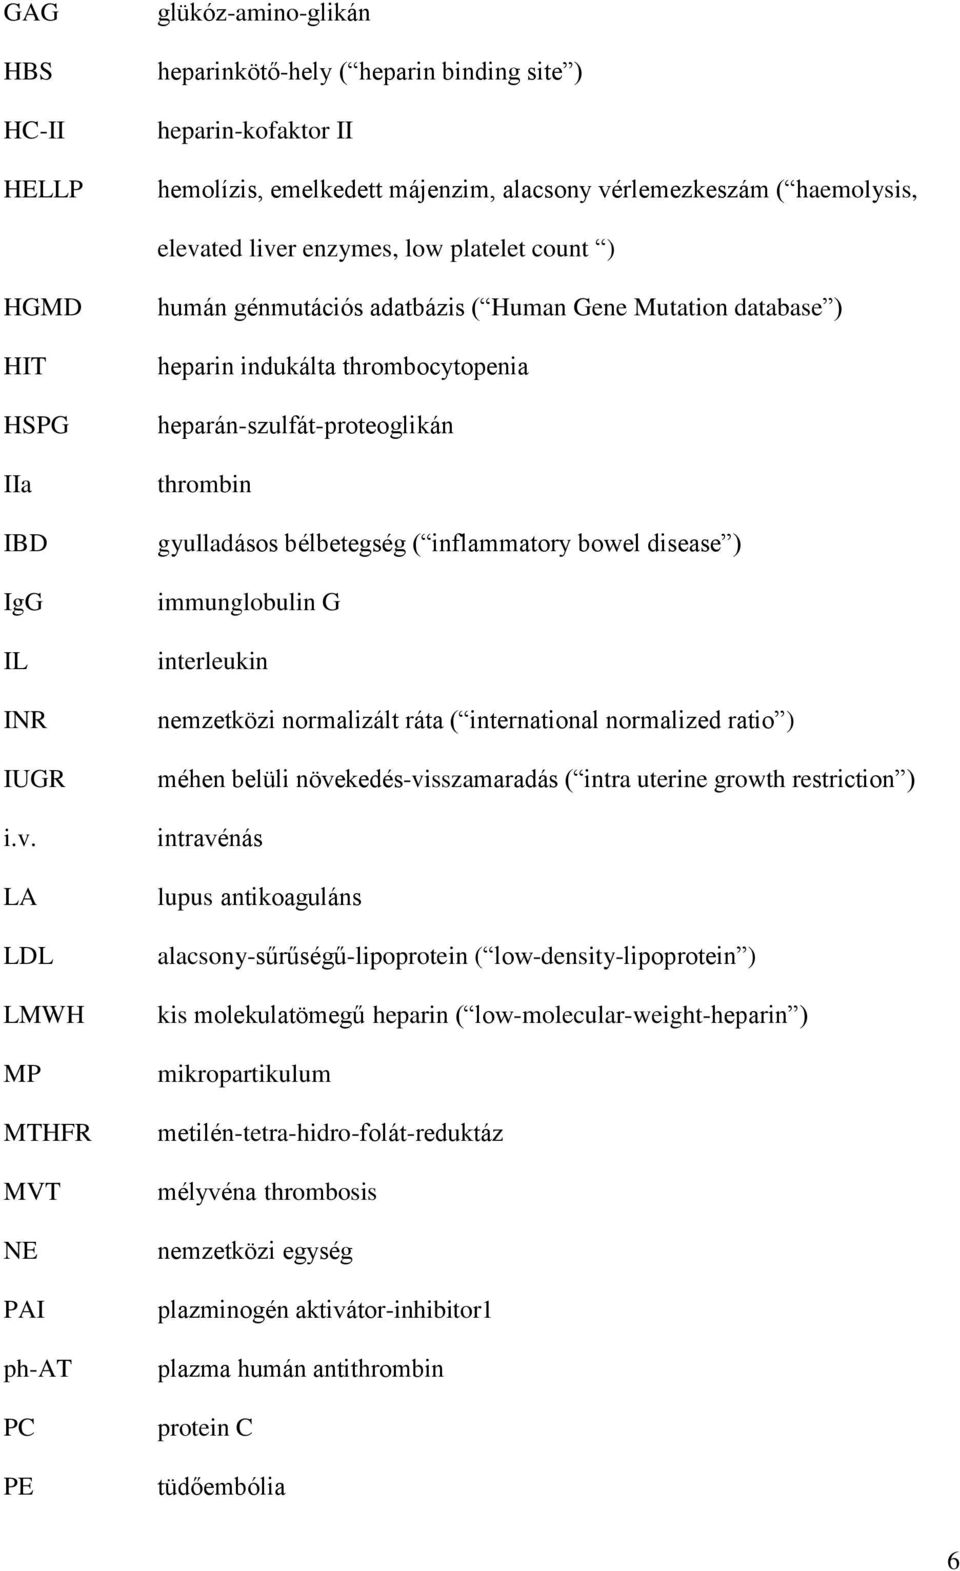 LA LDL LMWH MP MTHFR MVT NE PAI ph-at PC PE humán génmutációs adatbázis ( Human Gene Mutation database ) heparin indukálta thrombocytopenia heparán-szulfát-proteoglikán thrombin gyulladásos